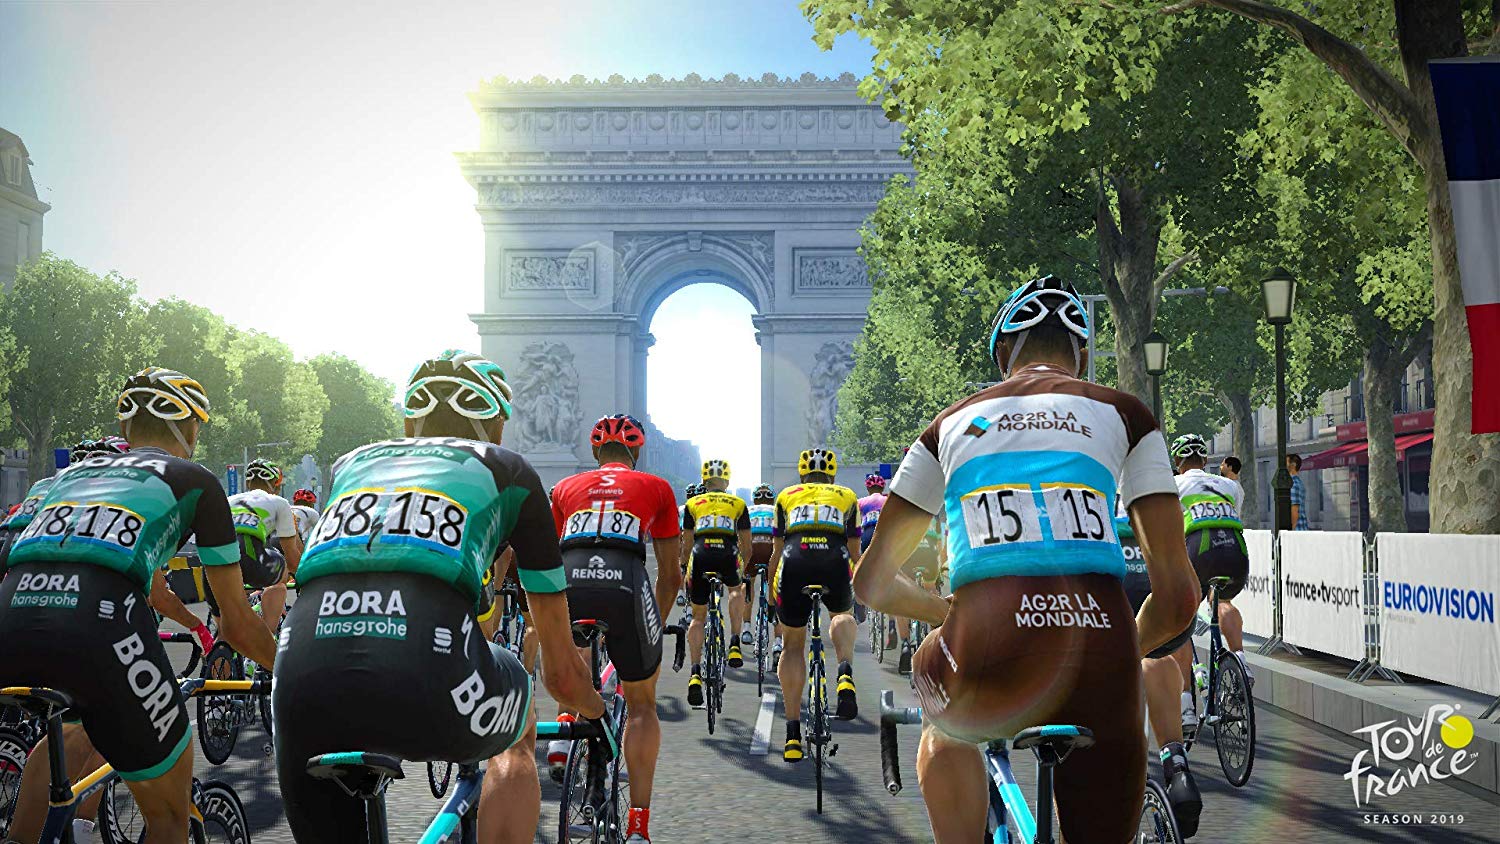 Tour De France - PlayStation 4 Video Games Maximum Games   